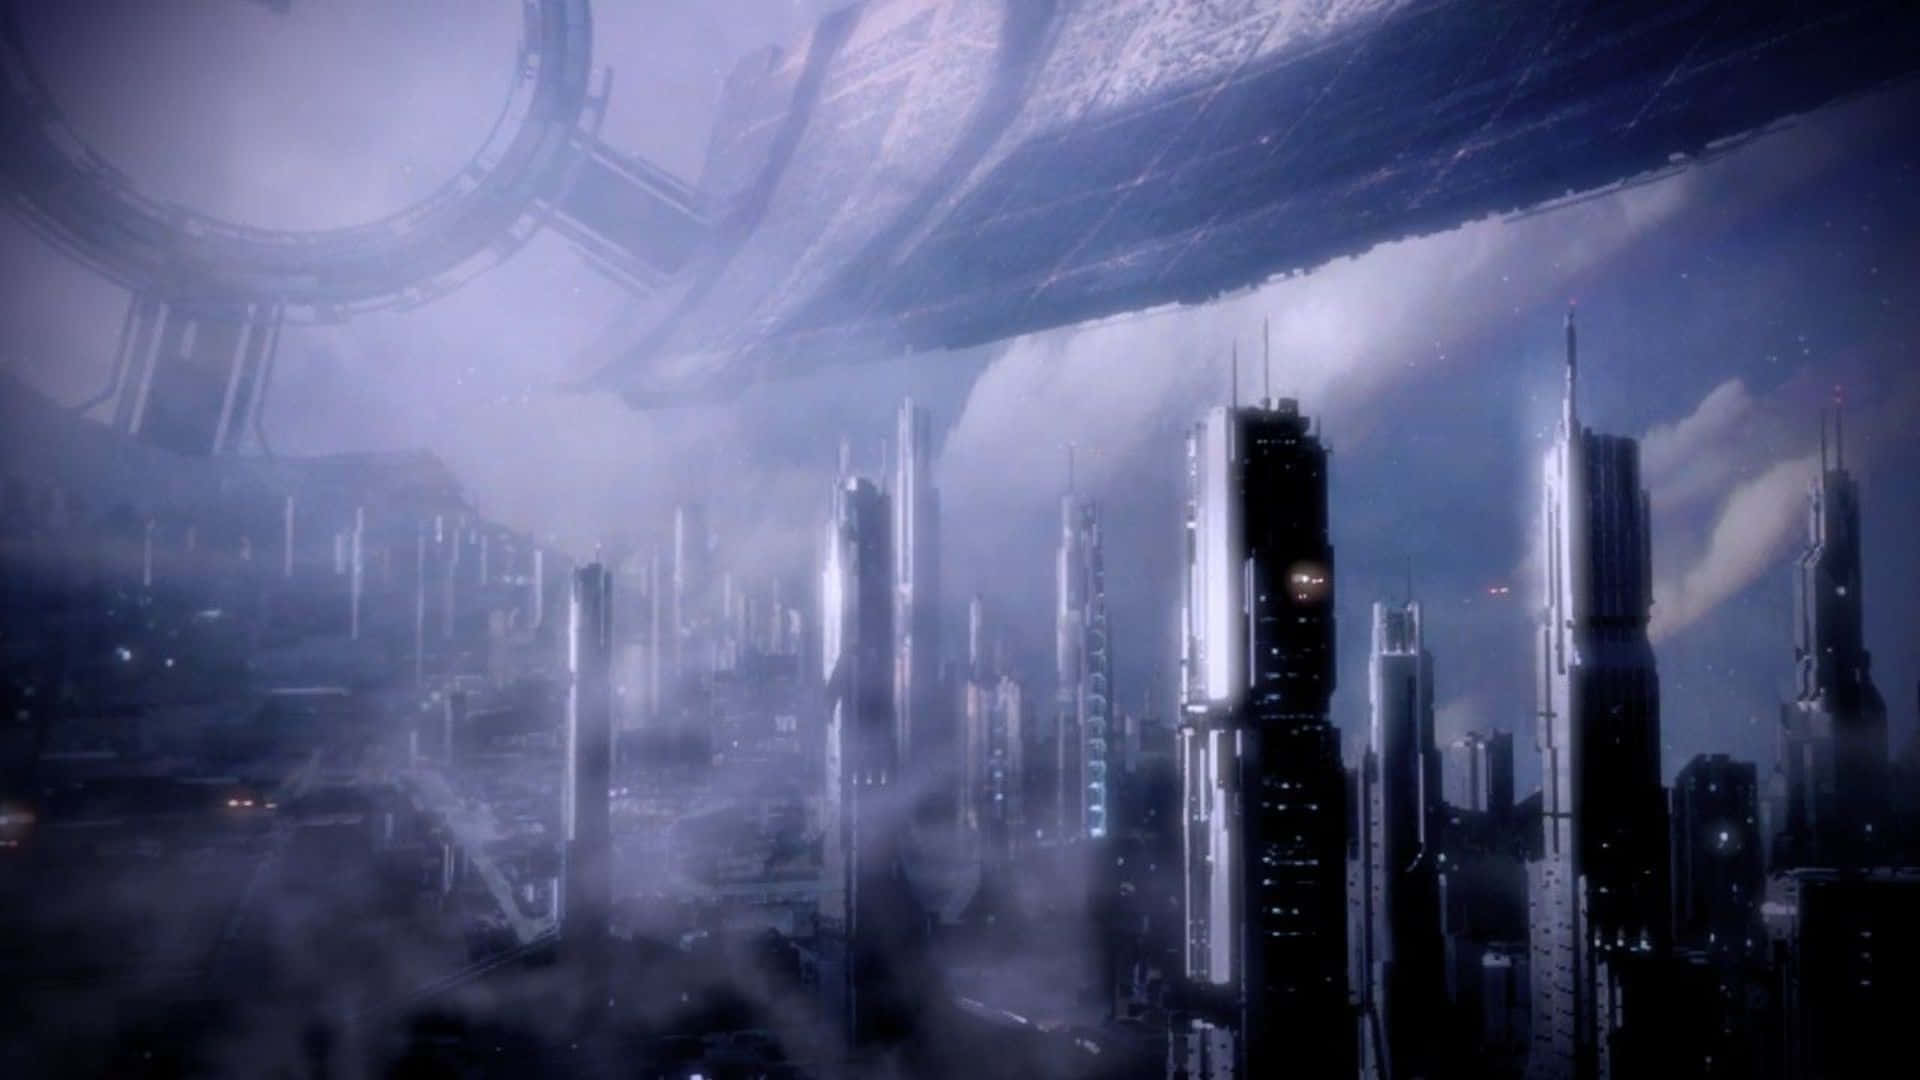 Increíblevista De La Ciudadela De Mass Effect En Alta Resolución. Fondo de pantalla